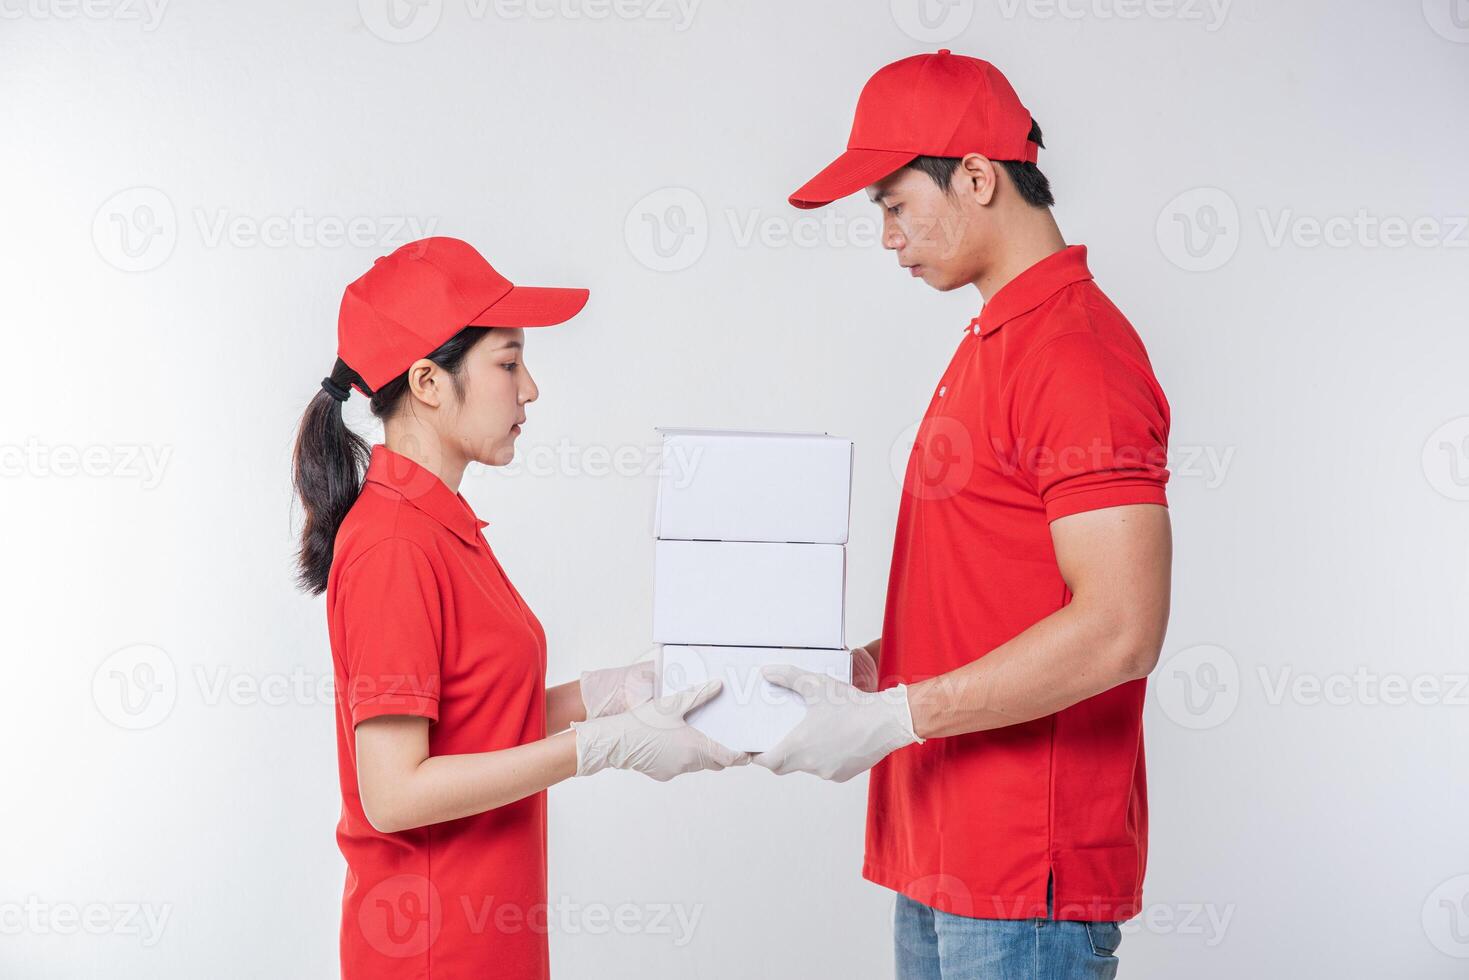 imagen de un joven repartidor feliz con gorra roja en blanco uniforme de camiseta de pie con una caja de cartón blanca vacía aislada en un estudio de fondo gris claro foto